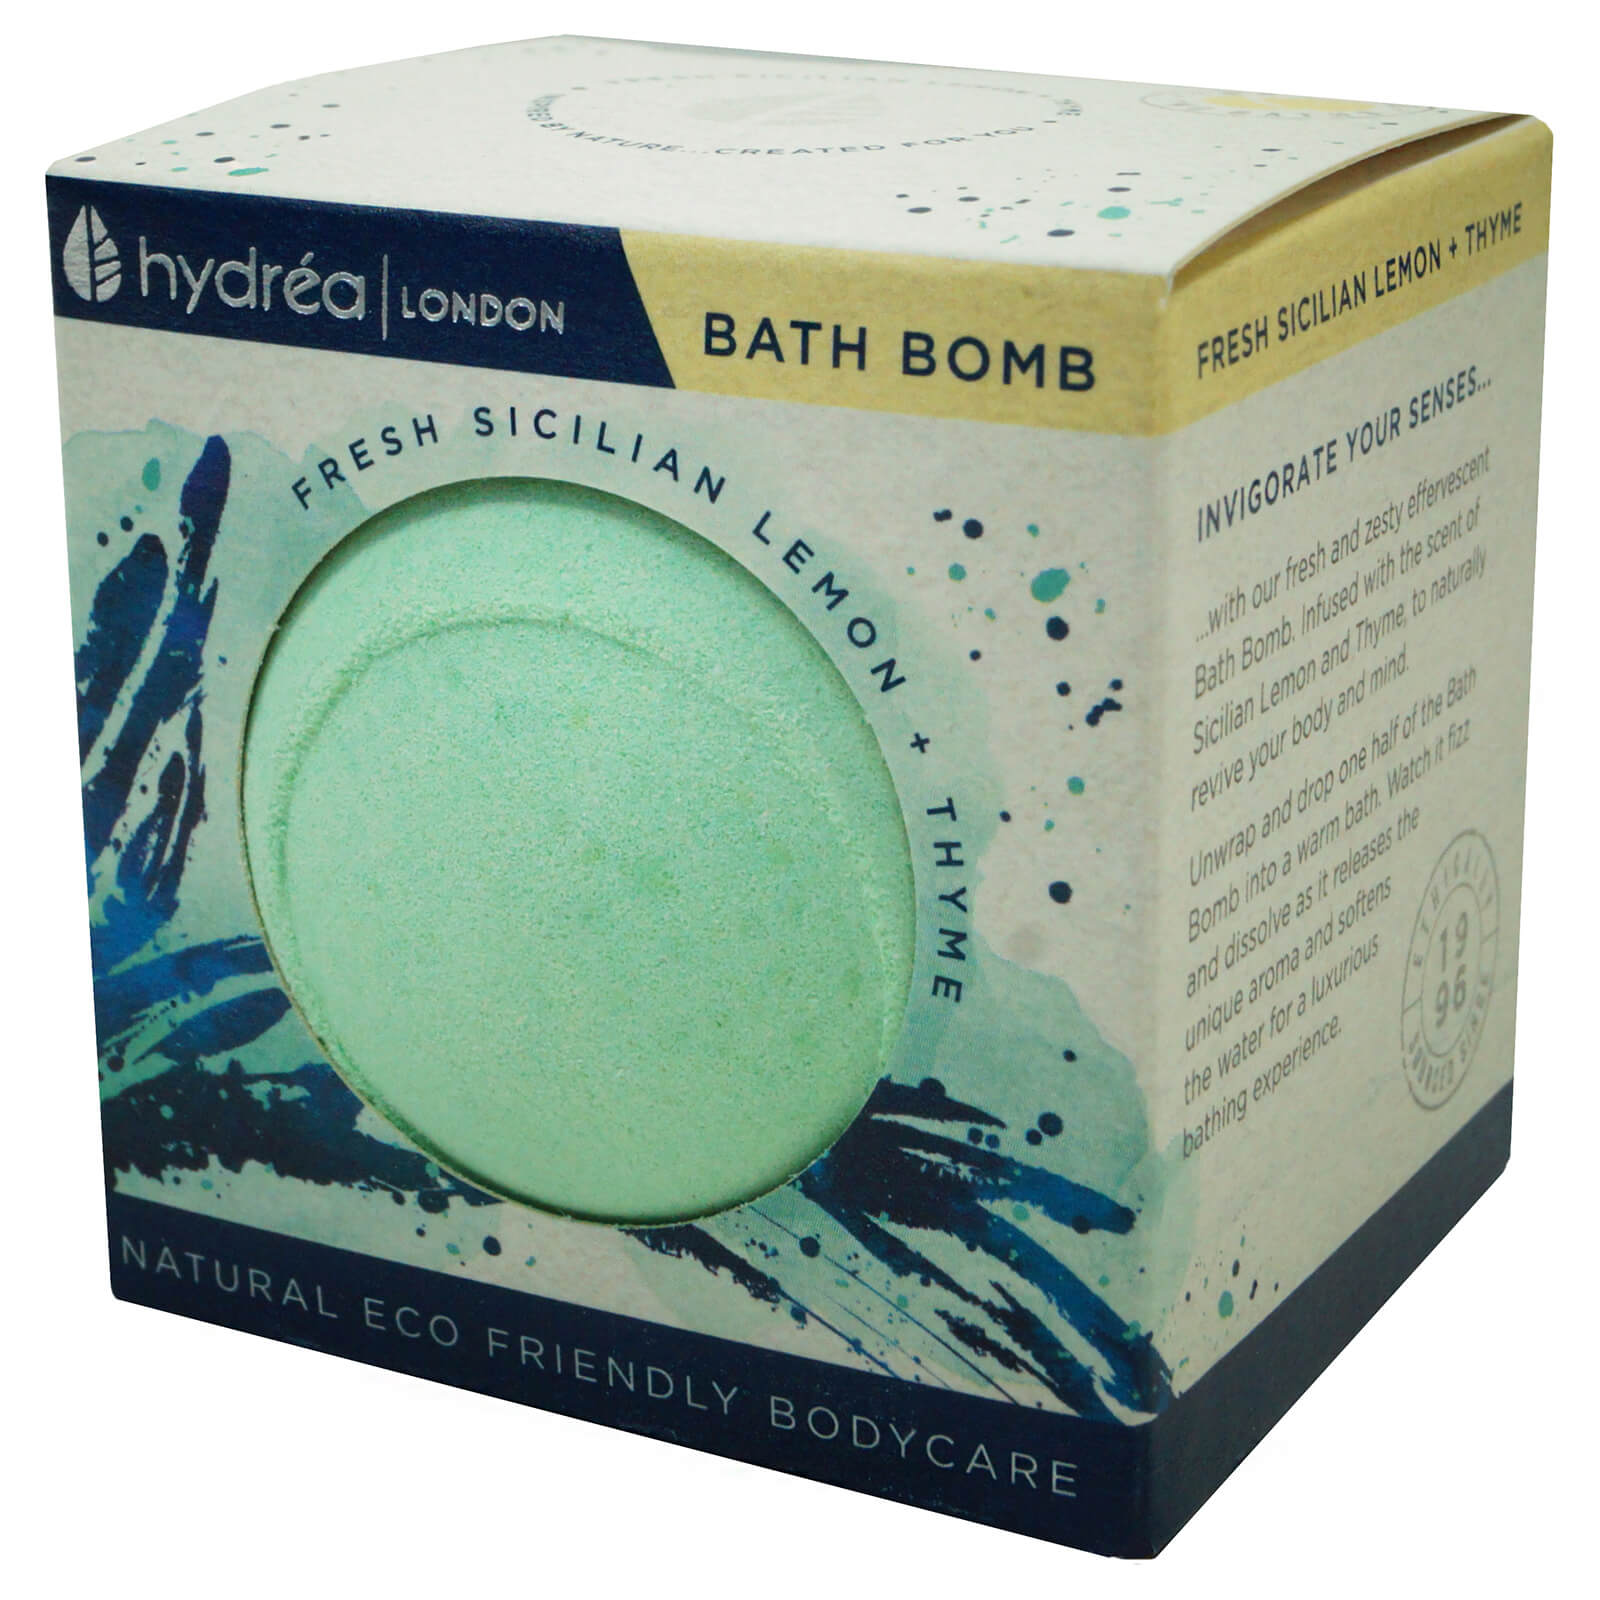 Hydrea London Uplifting Sicilian Lemon & Thyme Bath Bomb 2 x 60g